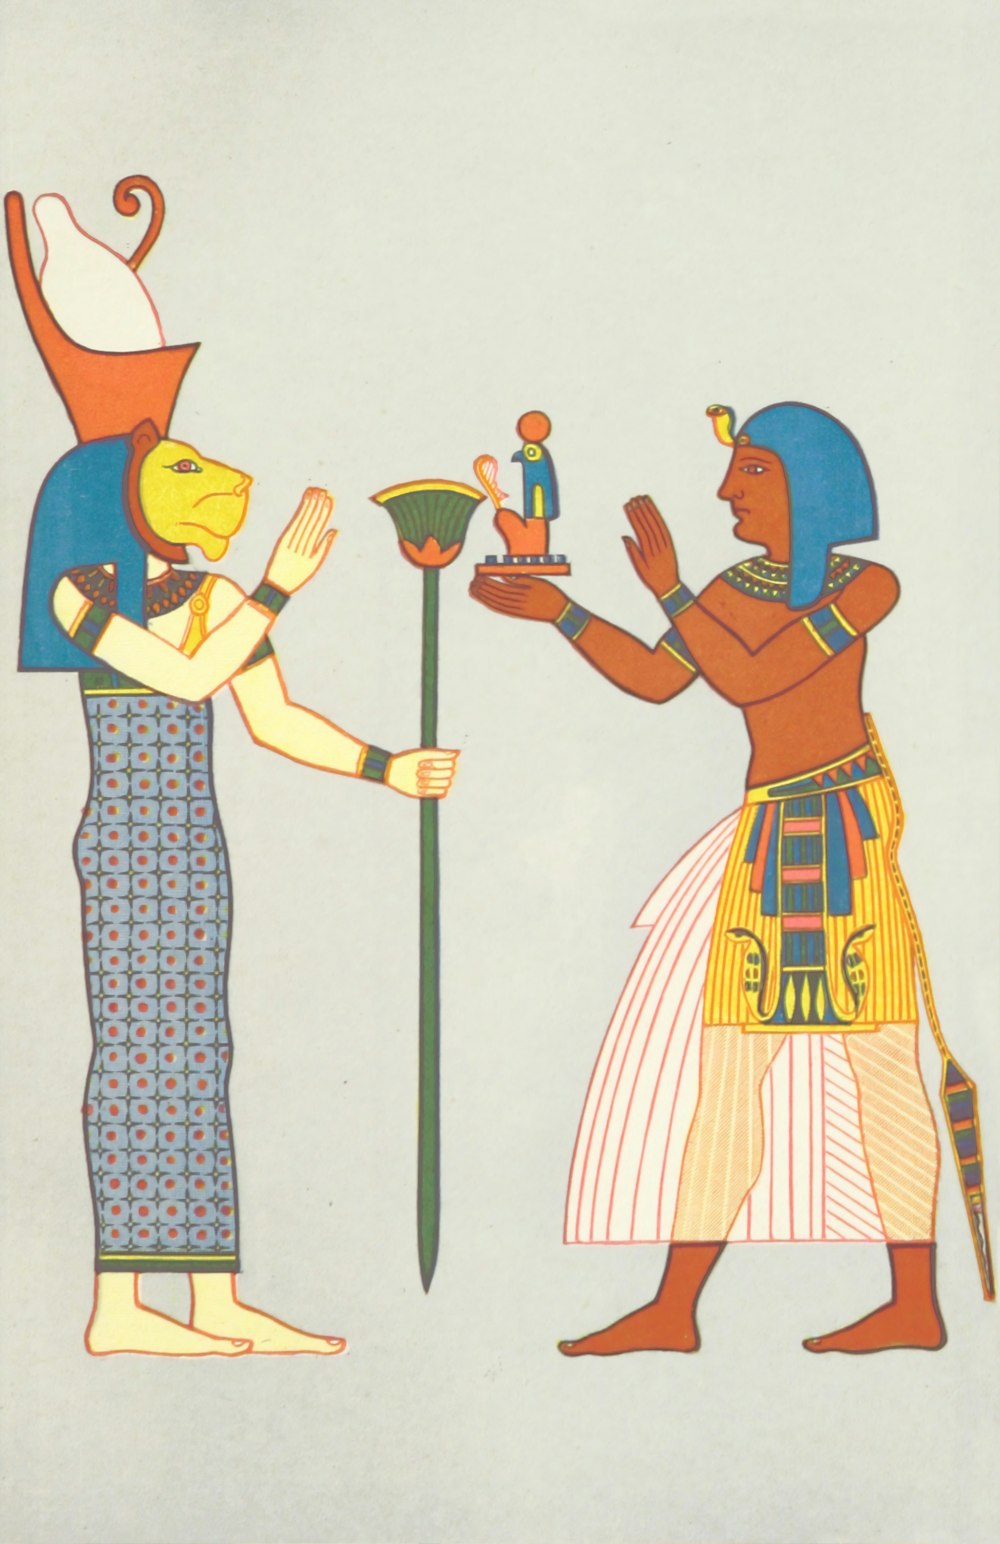 Uma cena egípcia com um homem oferecendo uma tigela a uma mulher